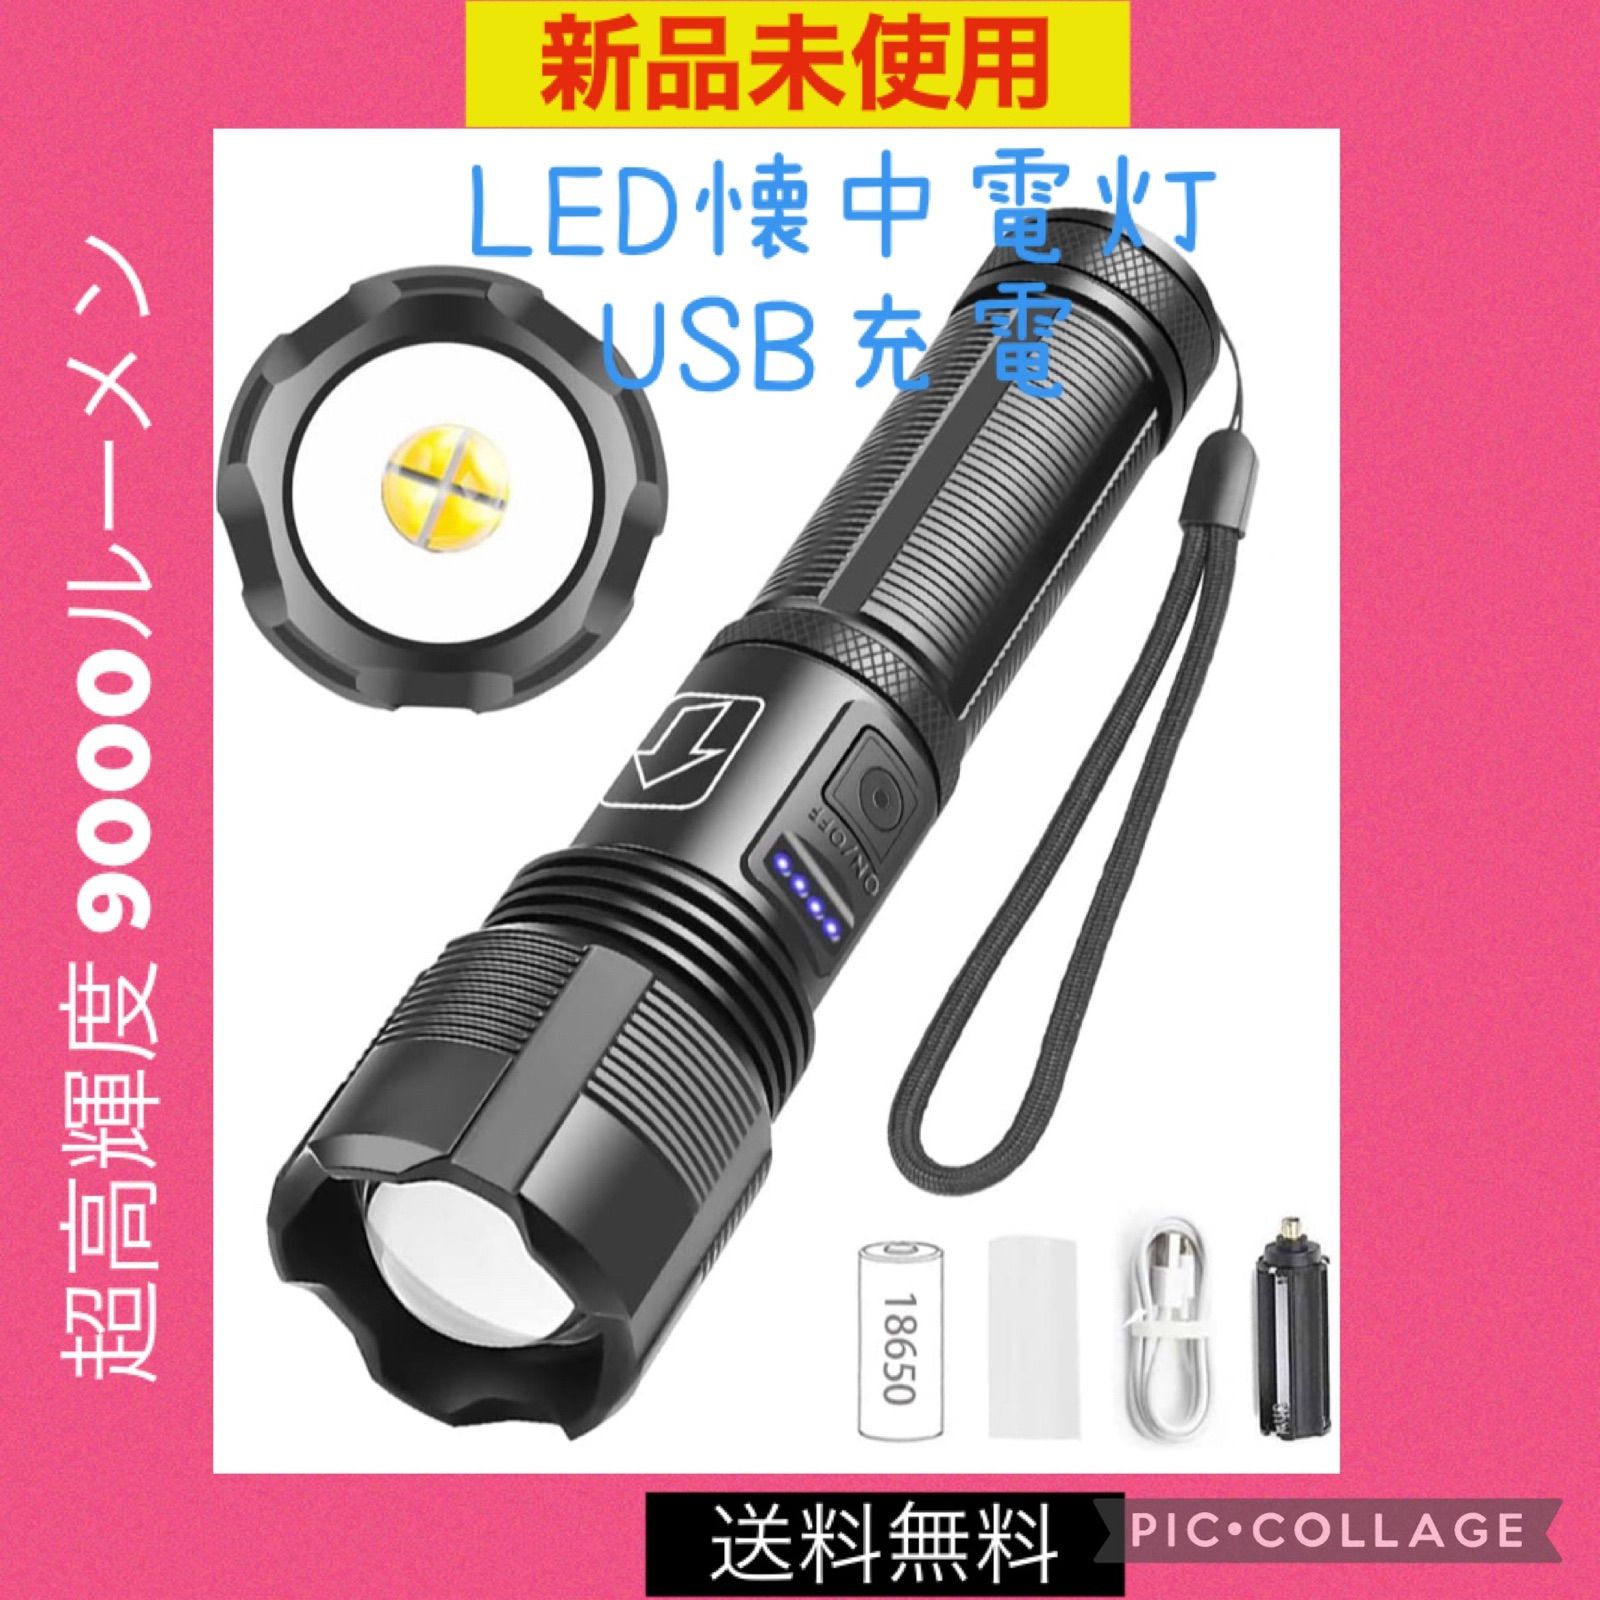 LED 懐中電灯 ハンディライト 超強力 軍用 強力 超高輝度 USB充電式 - メルカリ